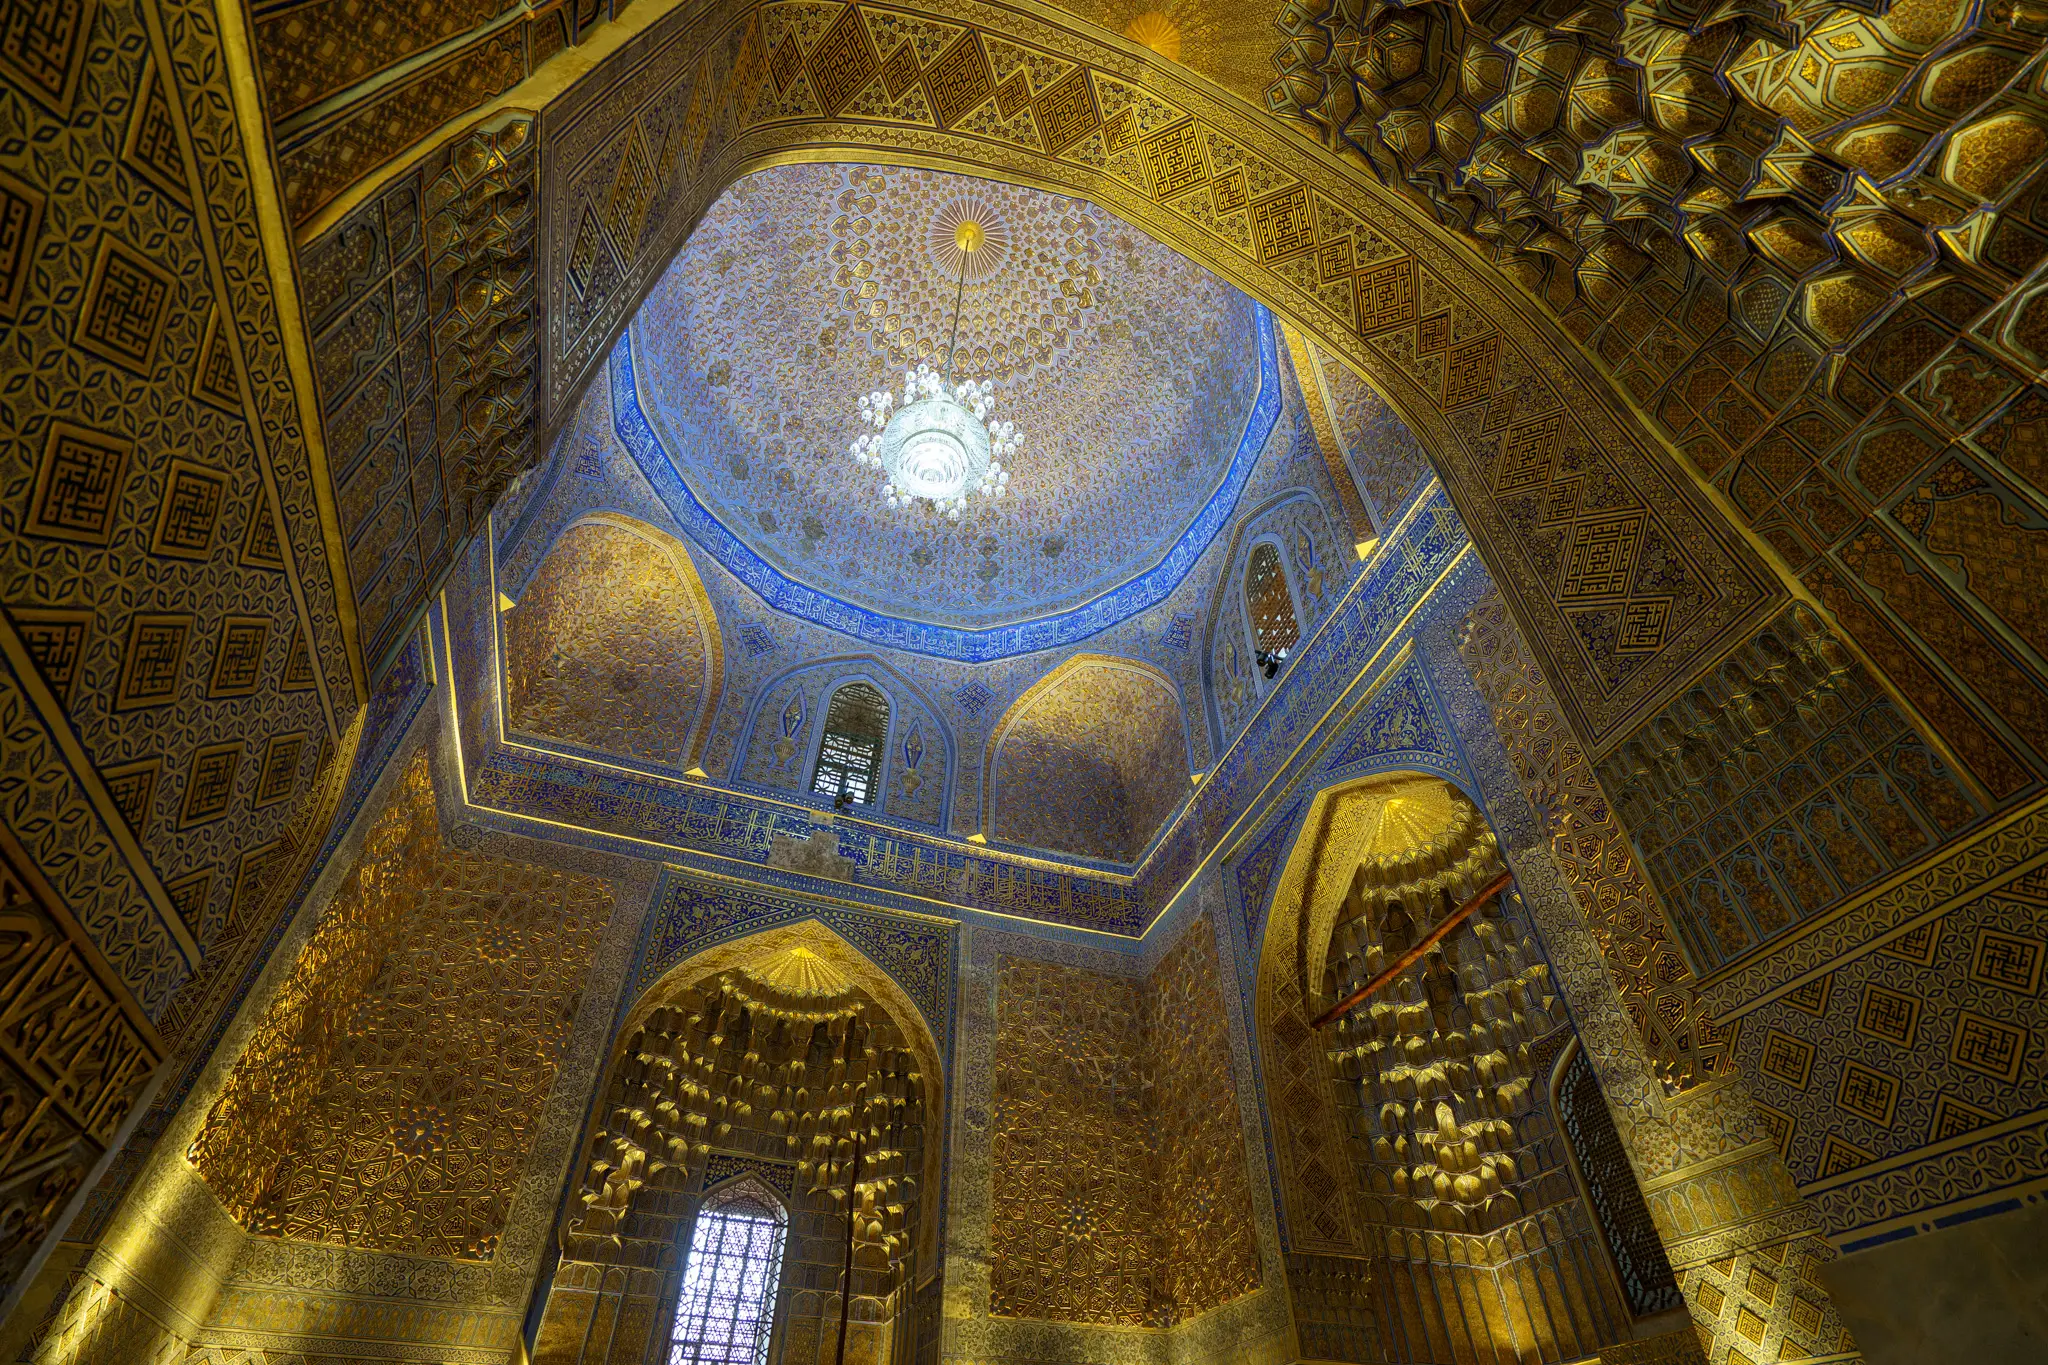 Amazing architecture in Samarkand, Uzbekistan 